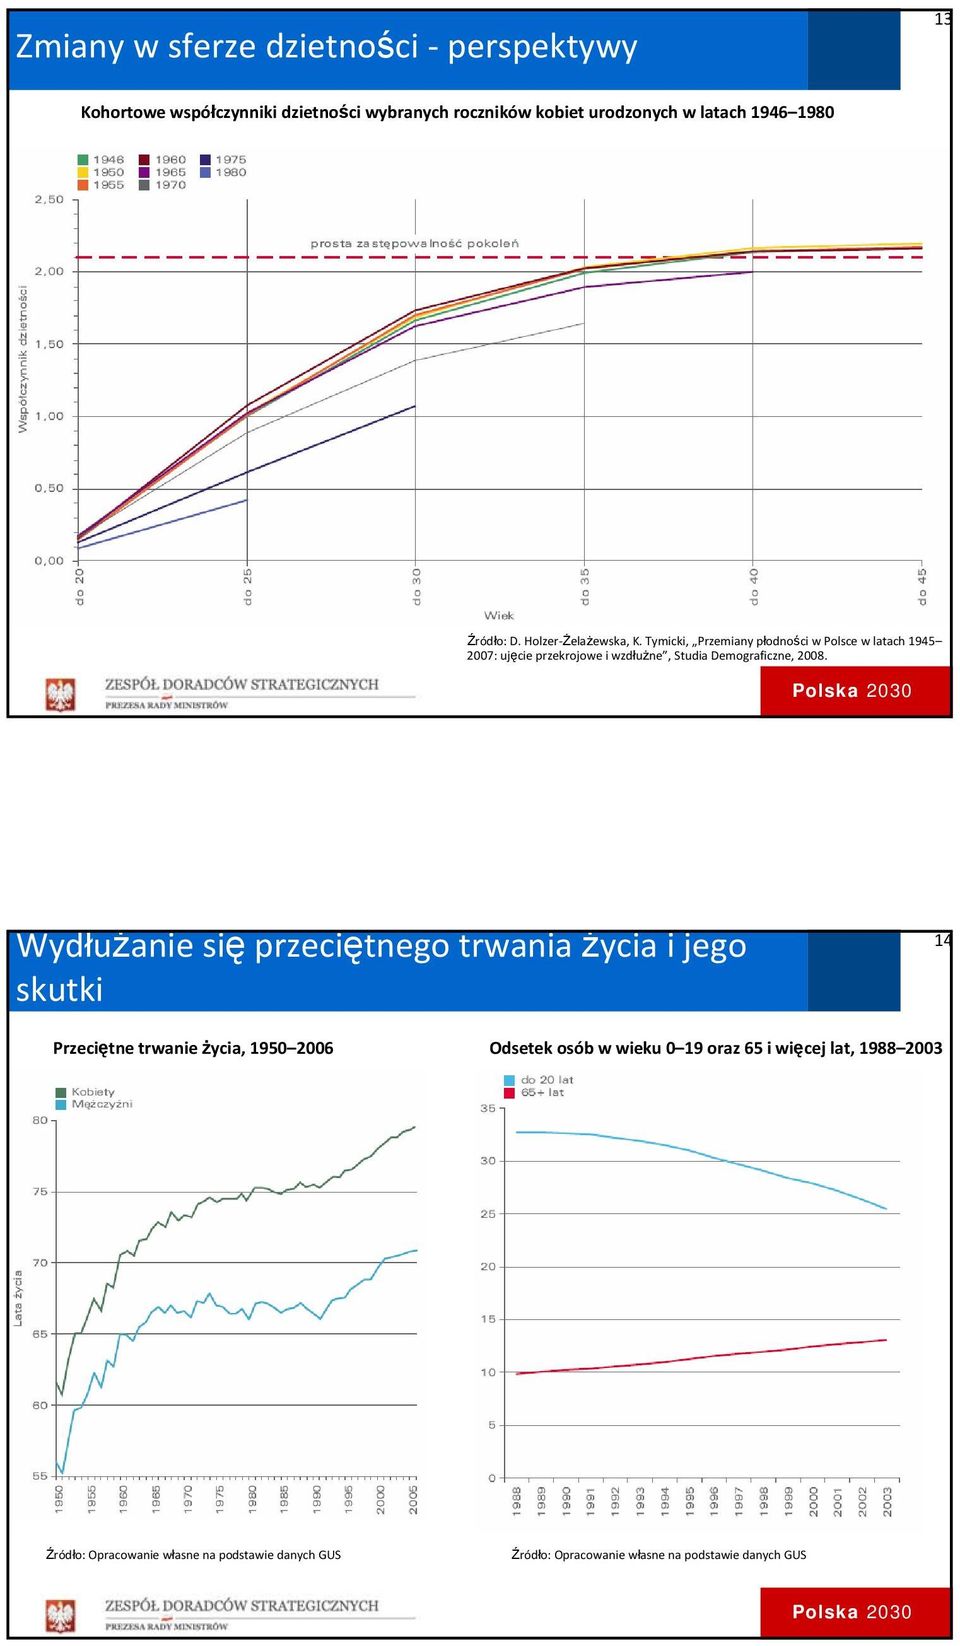 Tymicki, Przemiany płodności w Polsce w latach 1945 2007: ujęcie przekrojowe i wzdłużne, Studia Demograficzne, 2008.